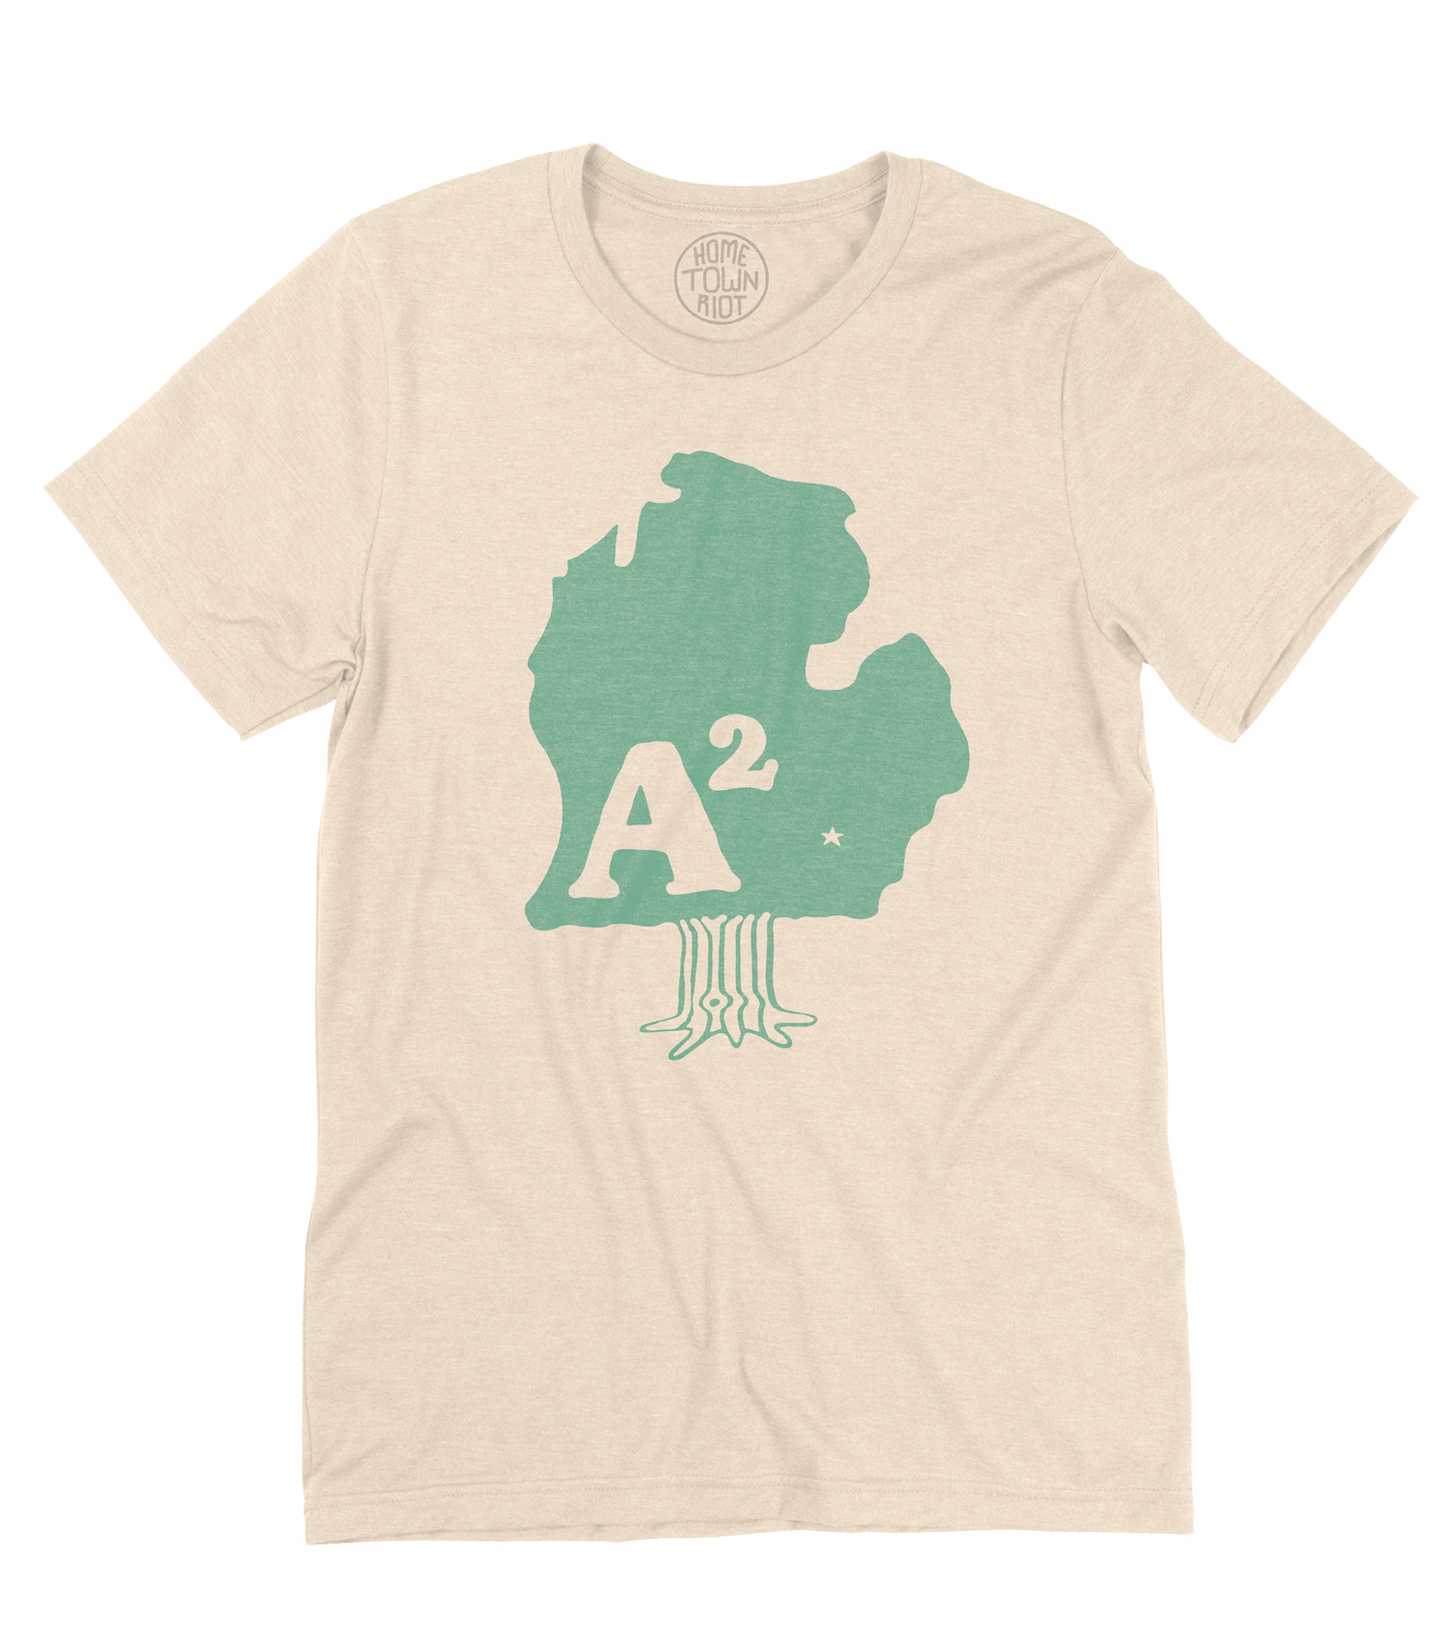 Ann Arbor A² Shirt